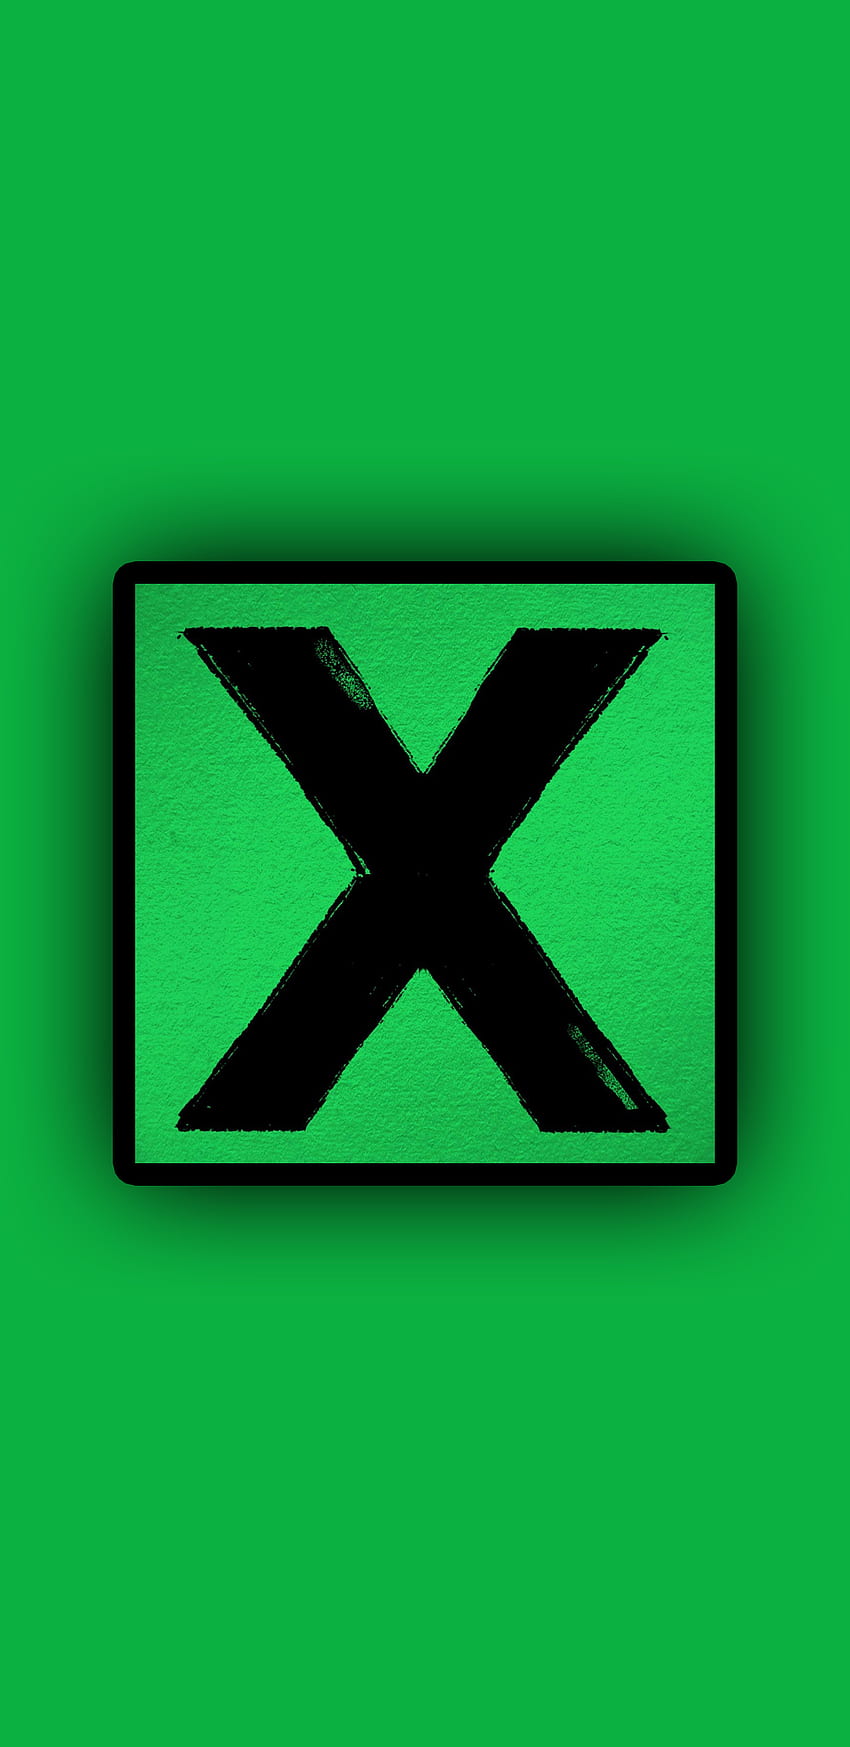 Ed Sheeran x, Pop, Ed Sheeran, Singer, Music, UK, Multiply, Album, Green HD phone wallpaper